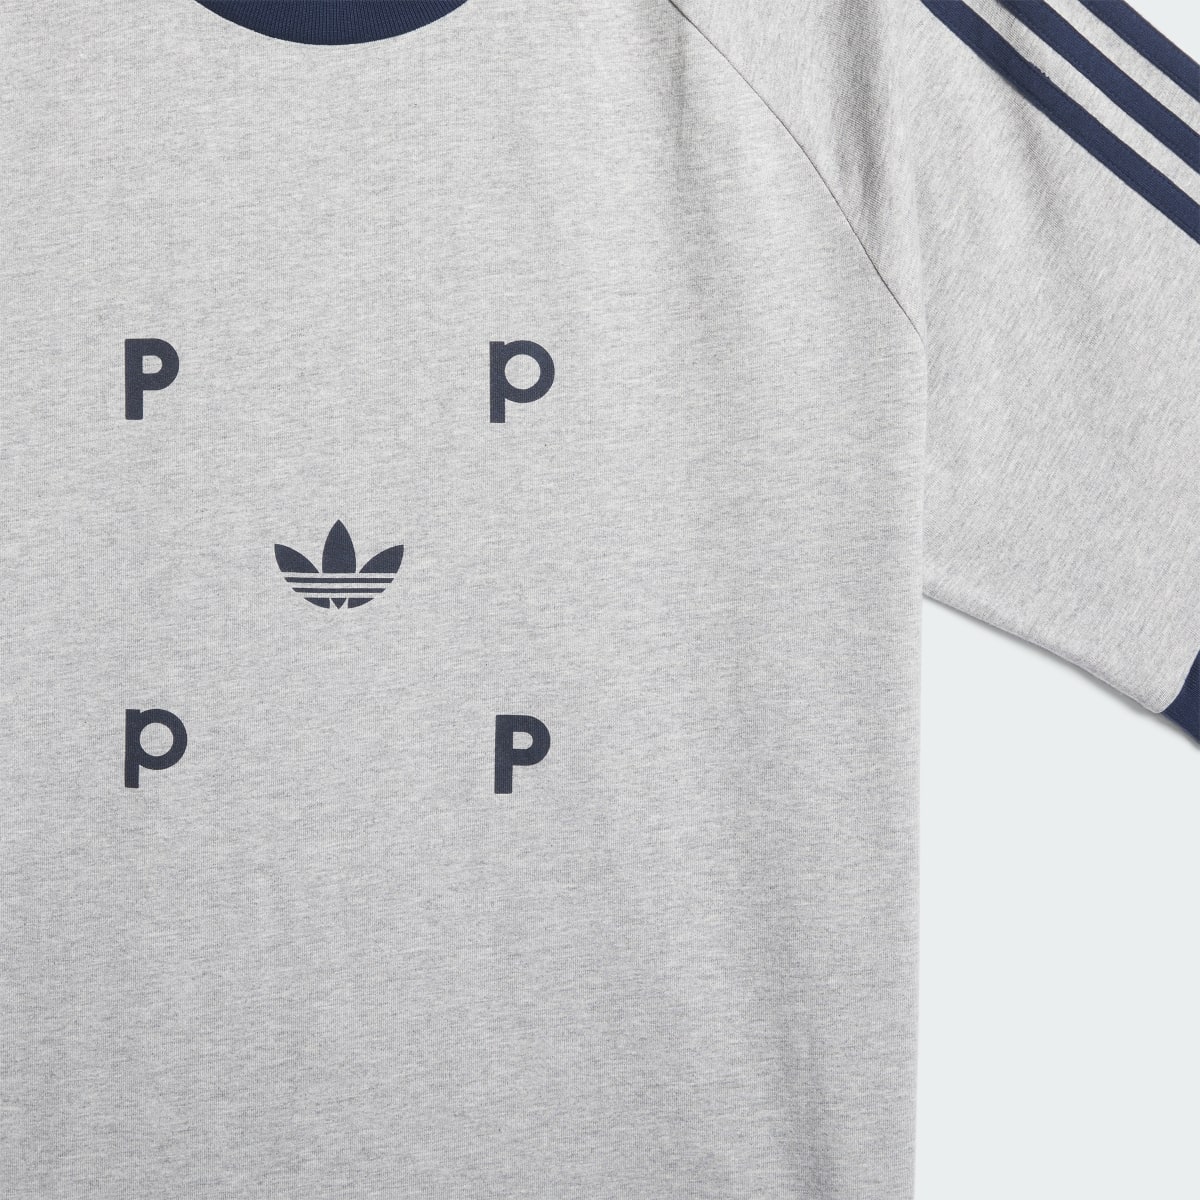 Adidas T-shirt classique Pop. 4